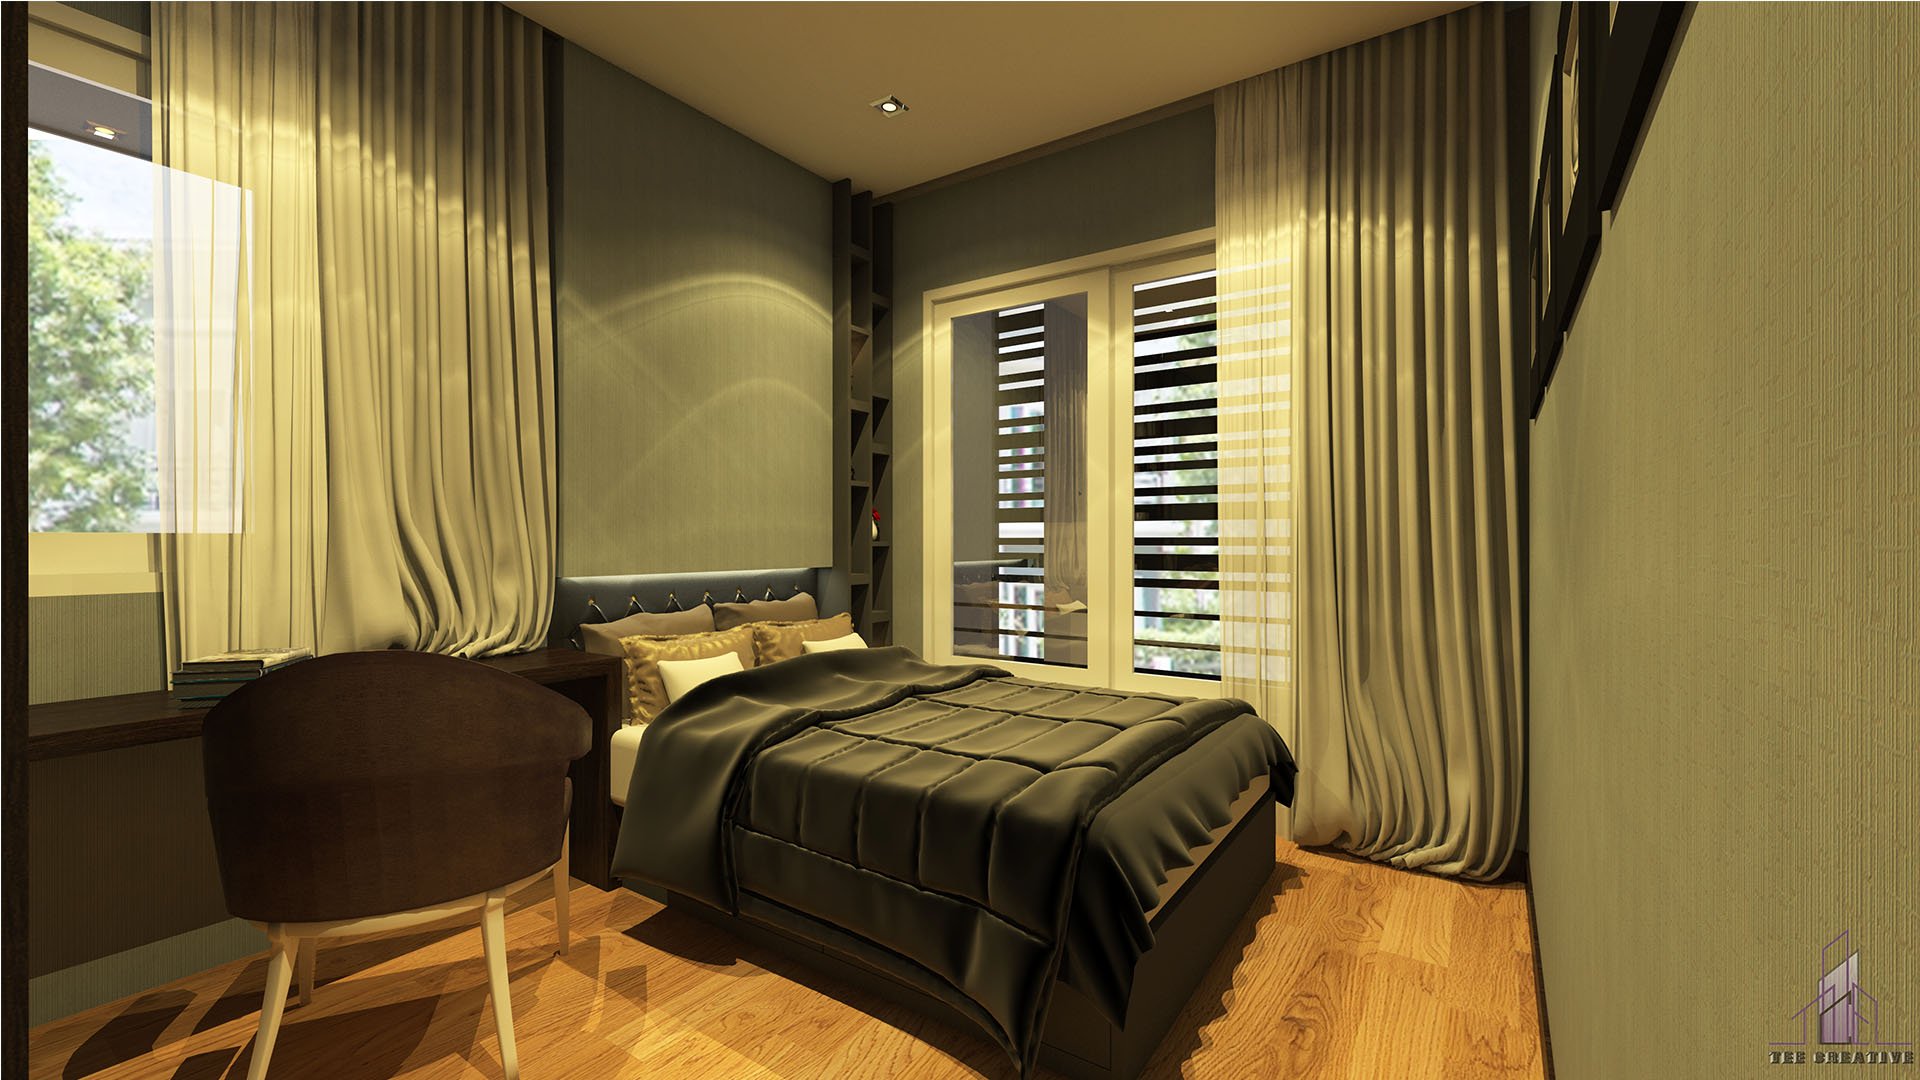 Home Design Bed room